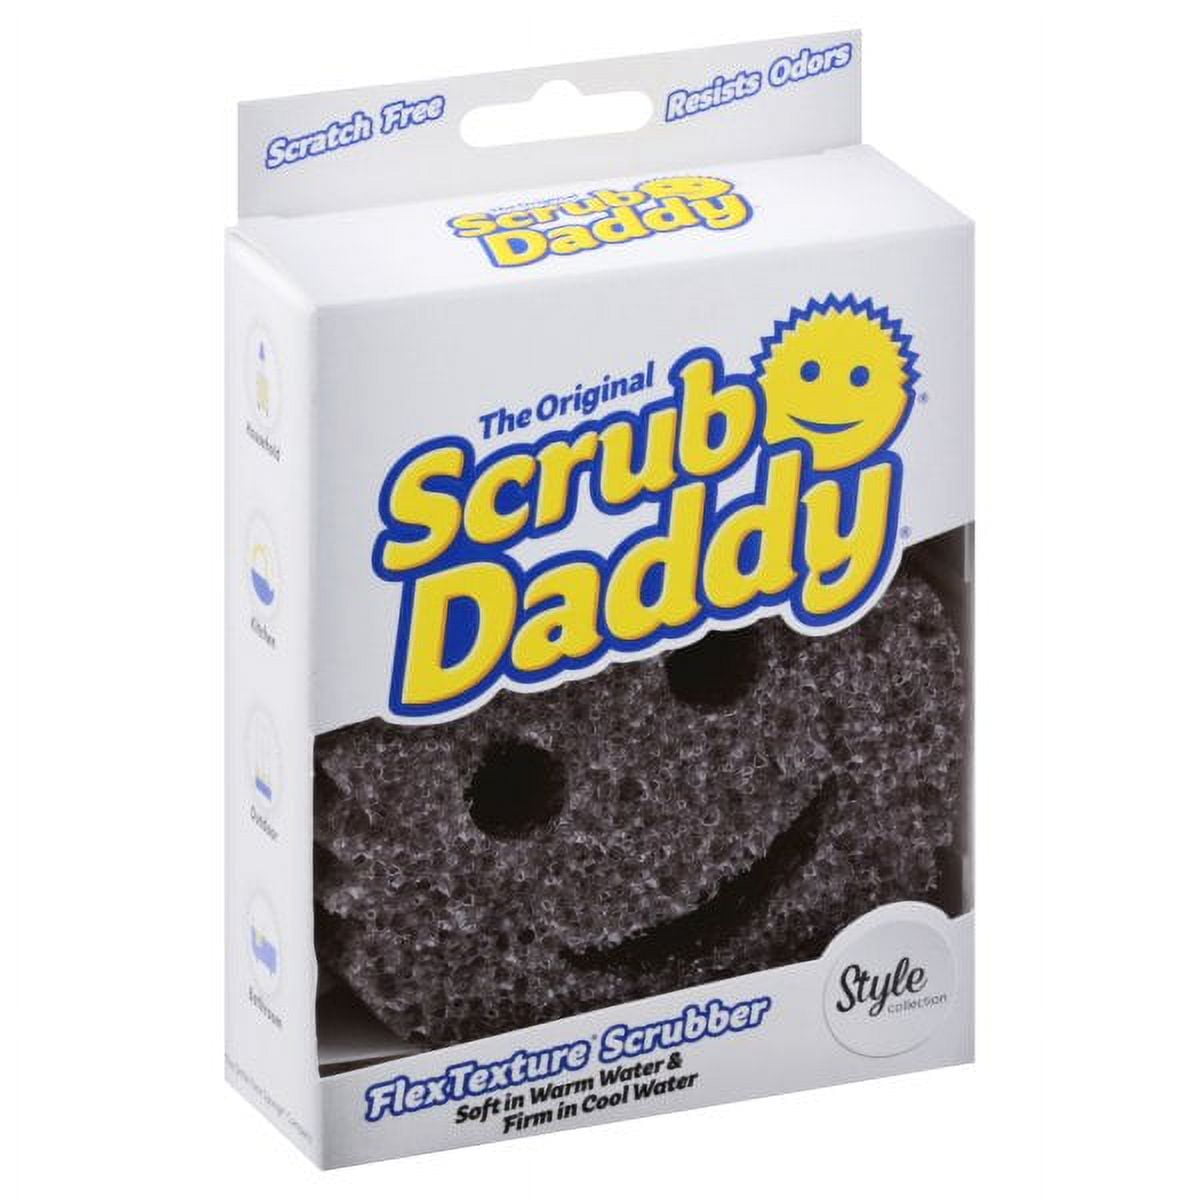 The Original Scrub Daddy – A Review